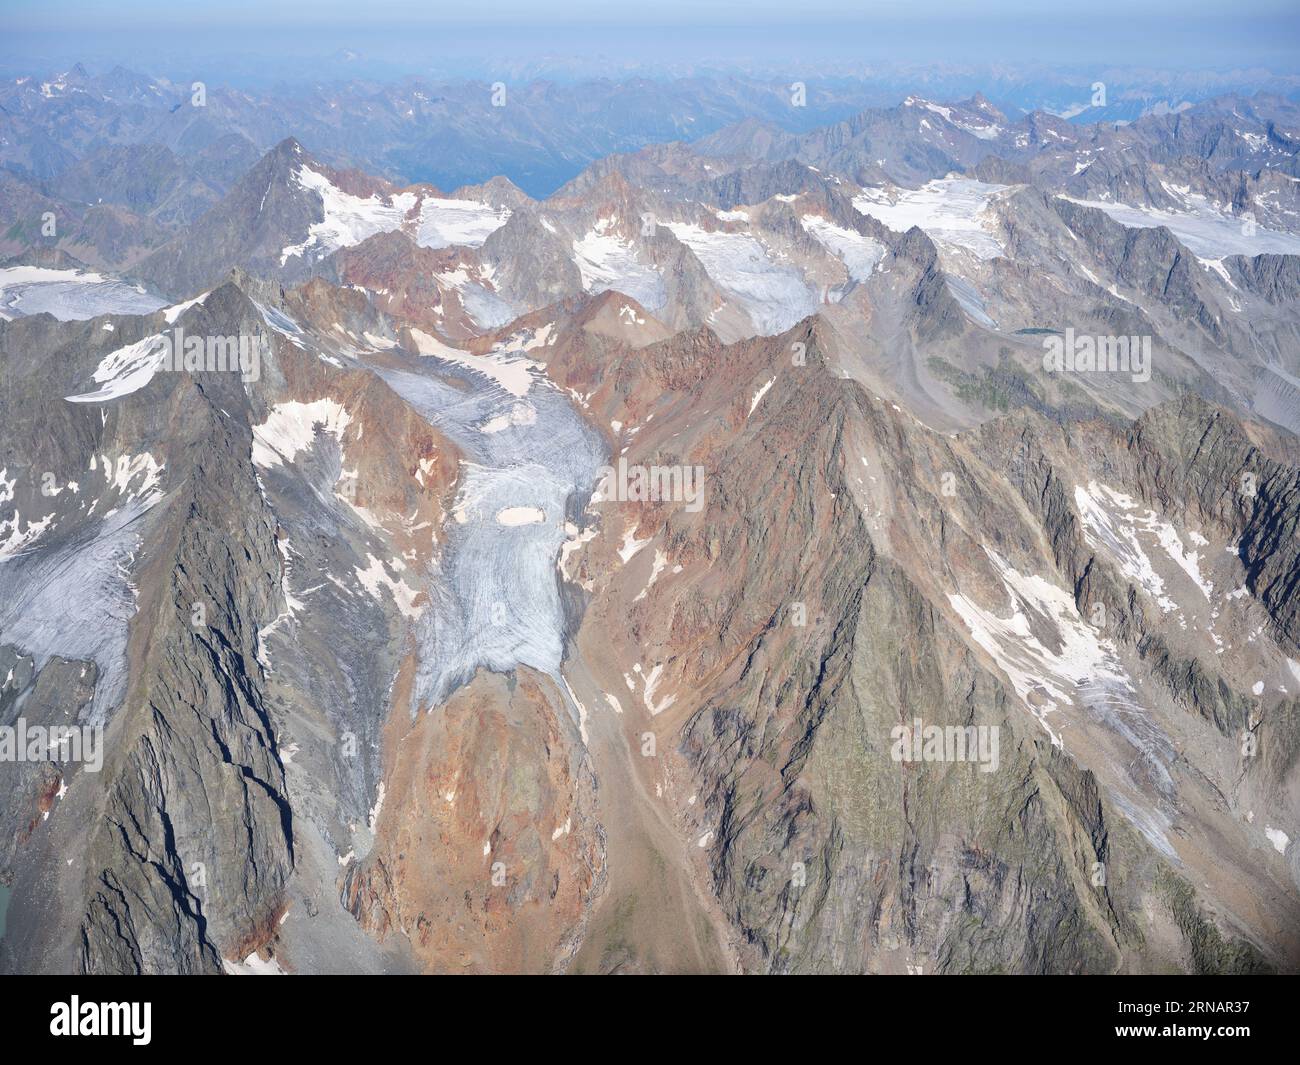 VUE AÉRIENNE. Vue panoramique sur les glaciers autour du Ruderhofspitze (altitude : 3474m) sur les Alpes de Stubai. Neustift im Stubaital, Tyrol, Autriche. Banque D'Images